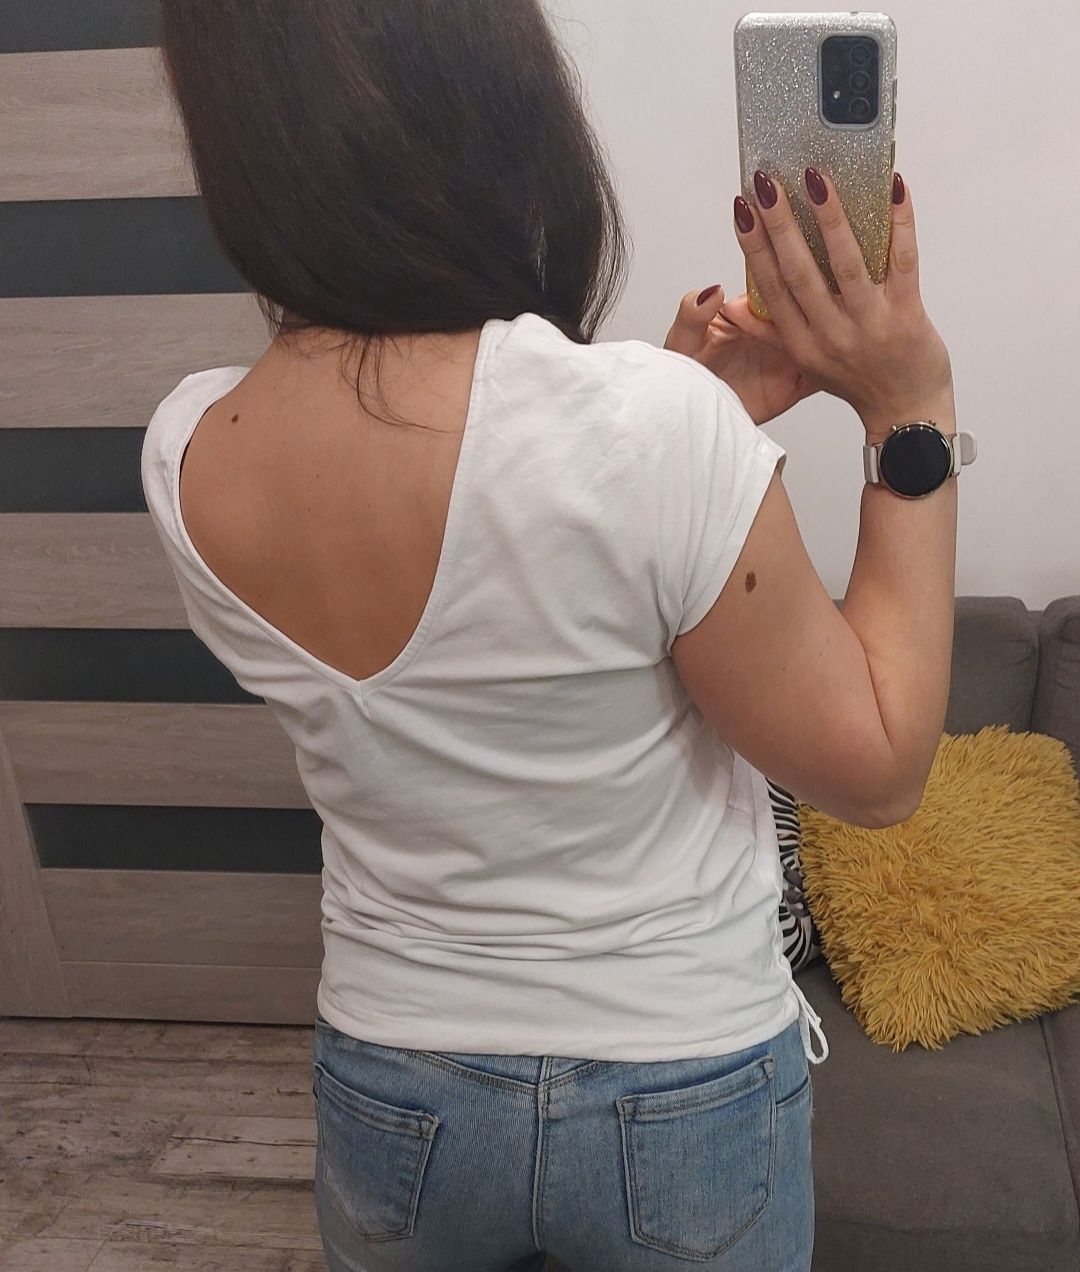 T-shirt damski biały Carry rozmiar S z nadrukiem słonecznik koszulka